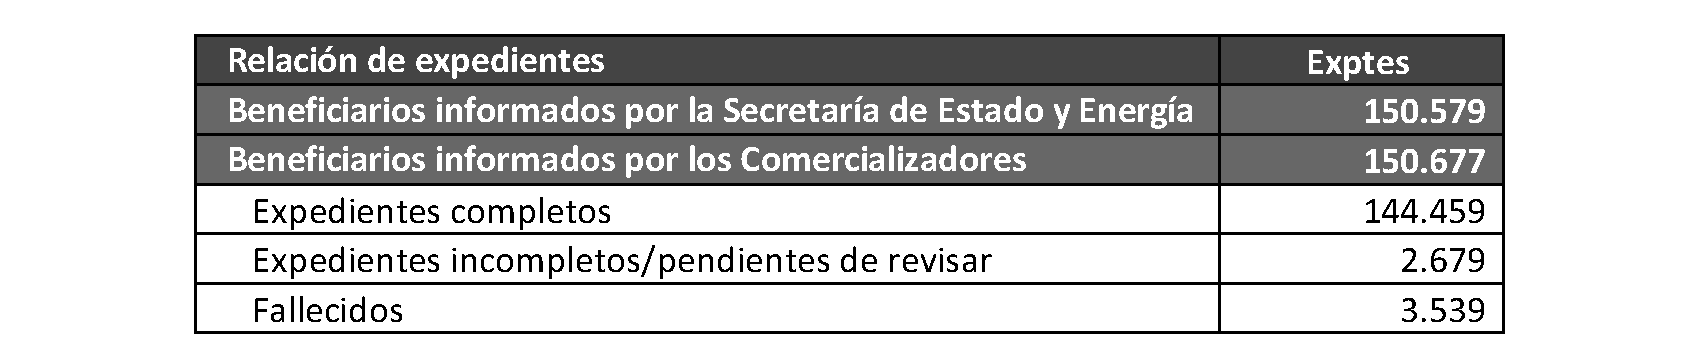 Imagen del artículo RESOLUCIÓN 2966/2024, de 4 de junio, del Director General de Servicios Sociales e Integración, por la que se conceden ayudas del bono social térmico 2023 a 44.466 beneficiarios del bono social eléctrico a 31 de diciembre de 2022 en la Comunidad de Madrid y por la que se inicia el plazo de renuncia de los beneficiarios incluidos en esta resolución al derecho de las ayudas del bono social térmico 2023.